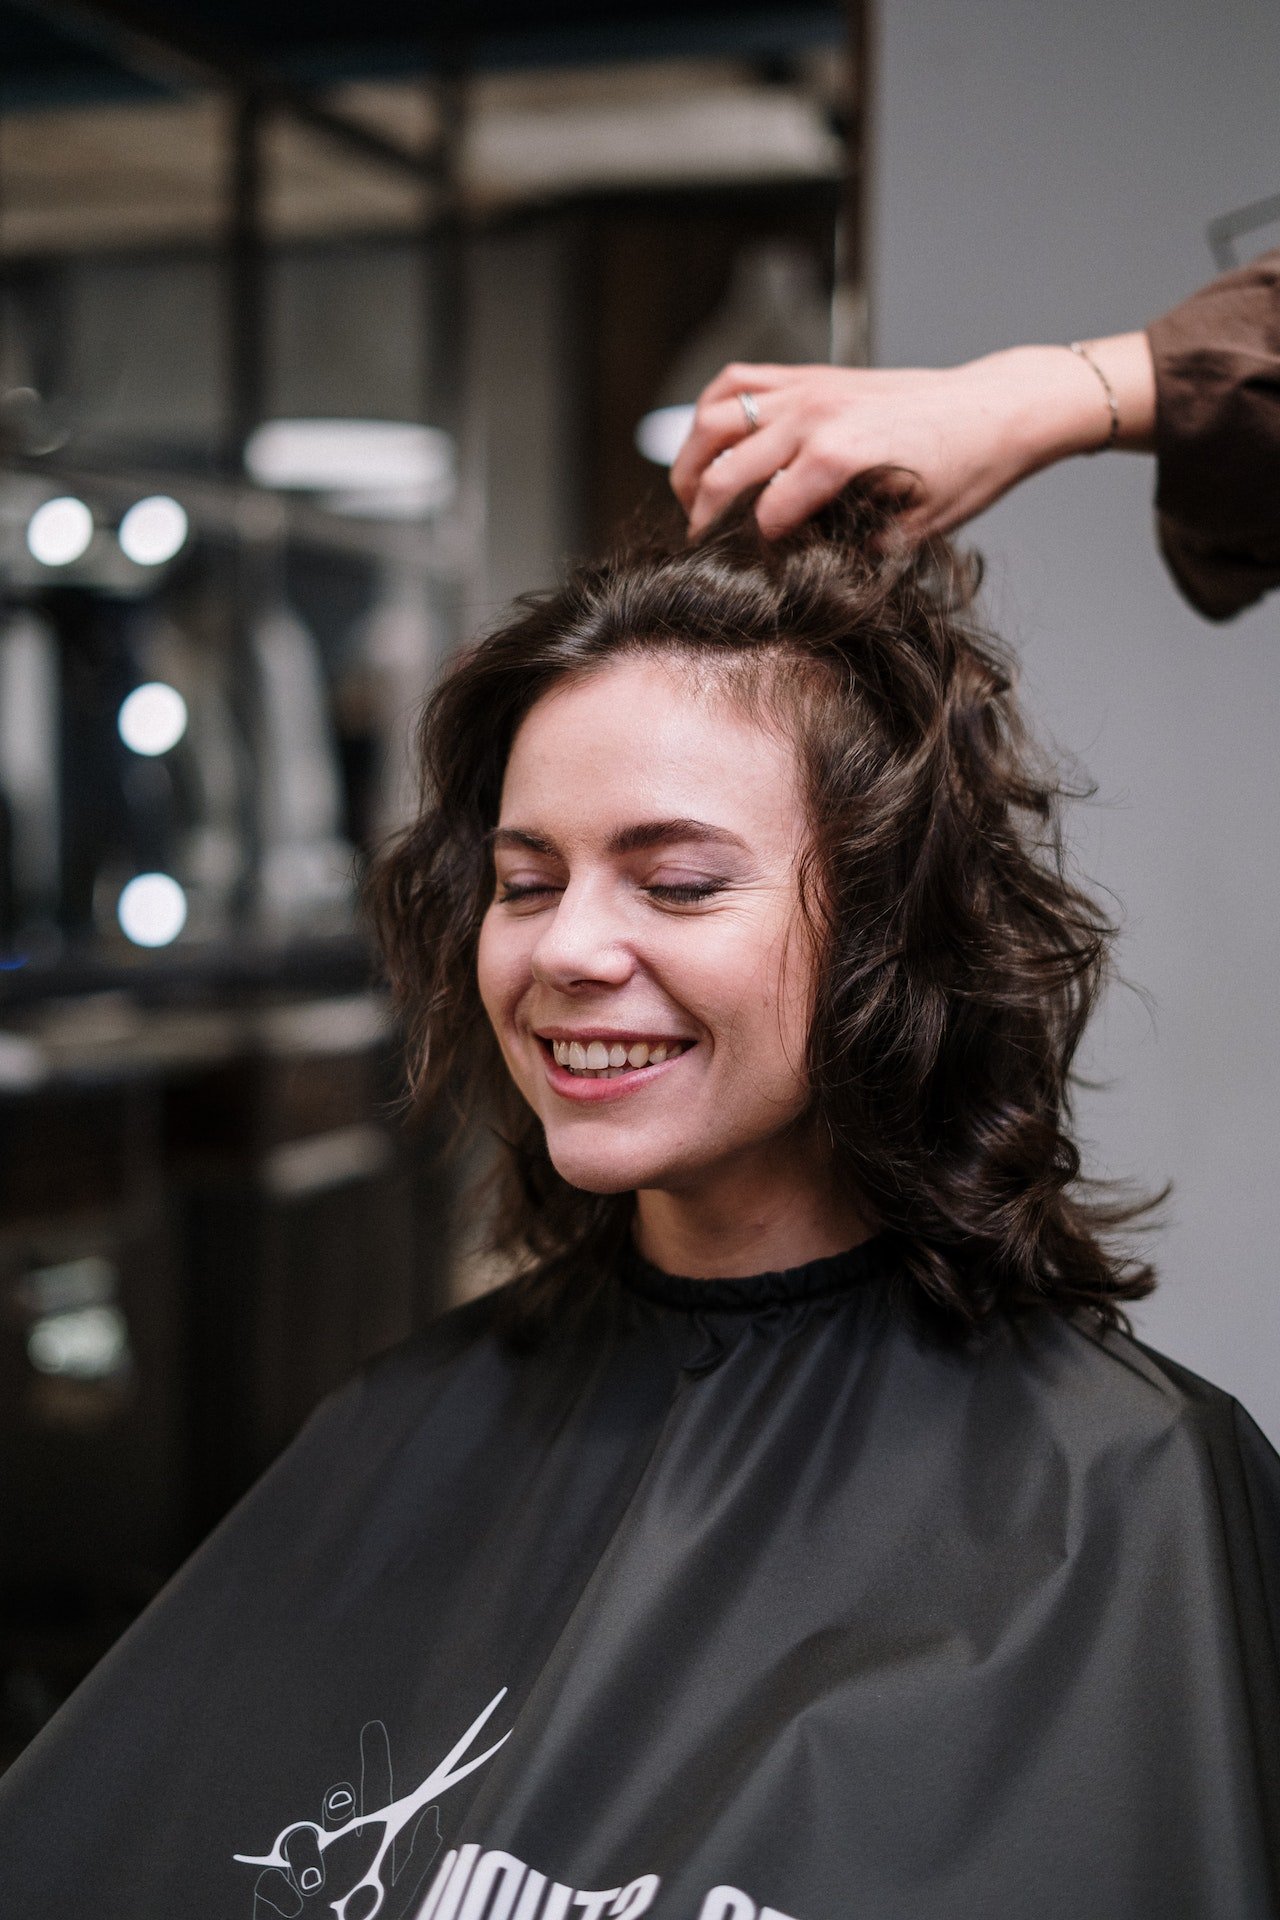 Radośnie uśmiechnięta kobieta w ciemnymi kręconymi włosach we fryzurze jak od fryzjera po użyciu Milk Shake z ręką fryzjera przeczesującą fryzurę